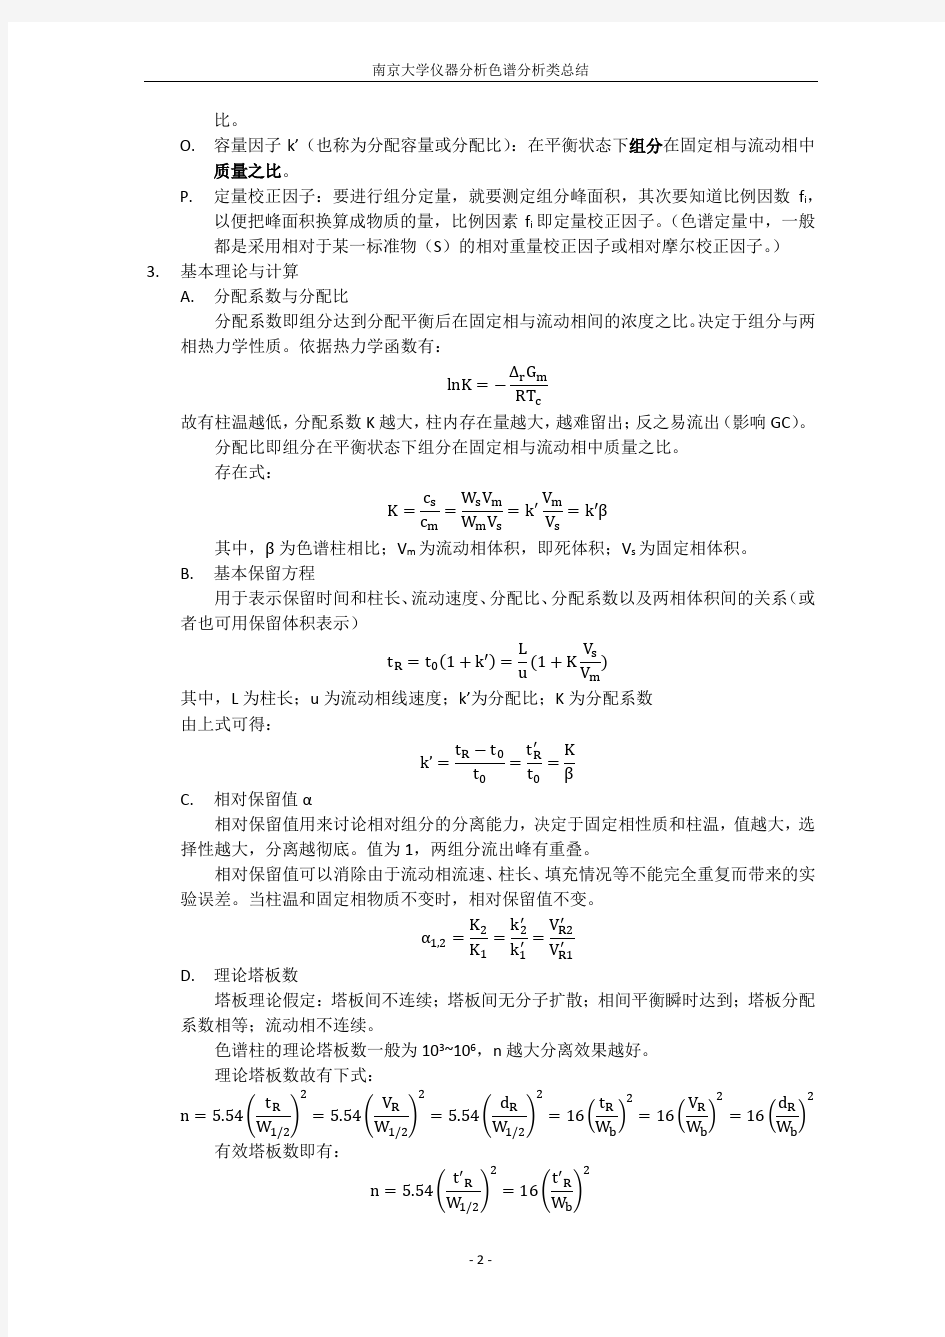 (完整word版)南京大学仪器分析色谱分析类总结